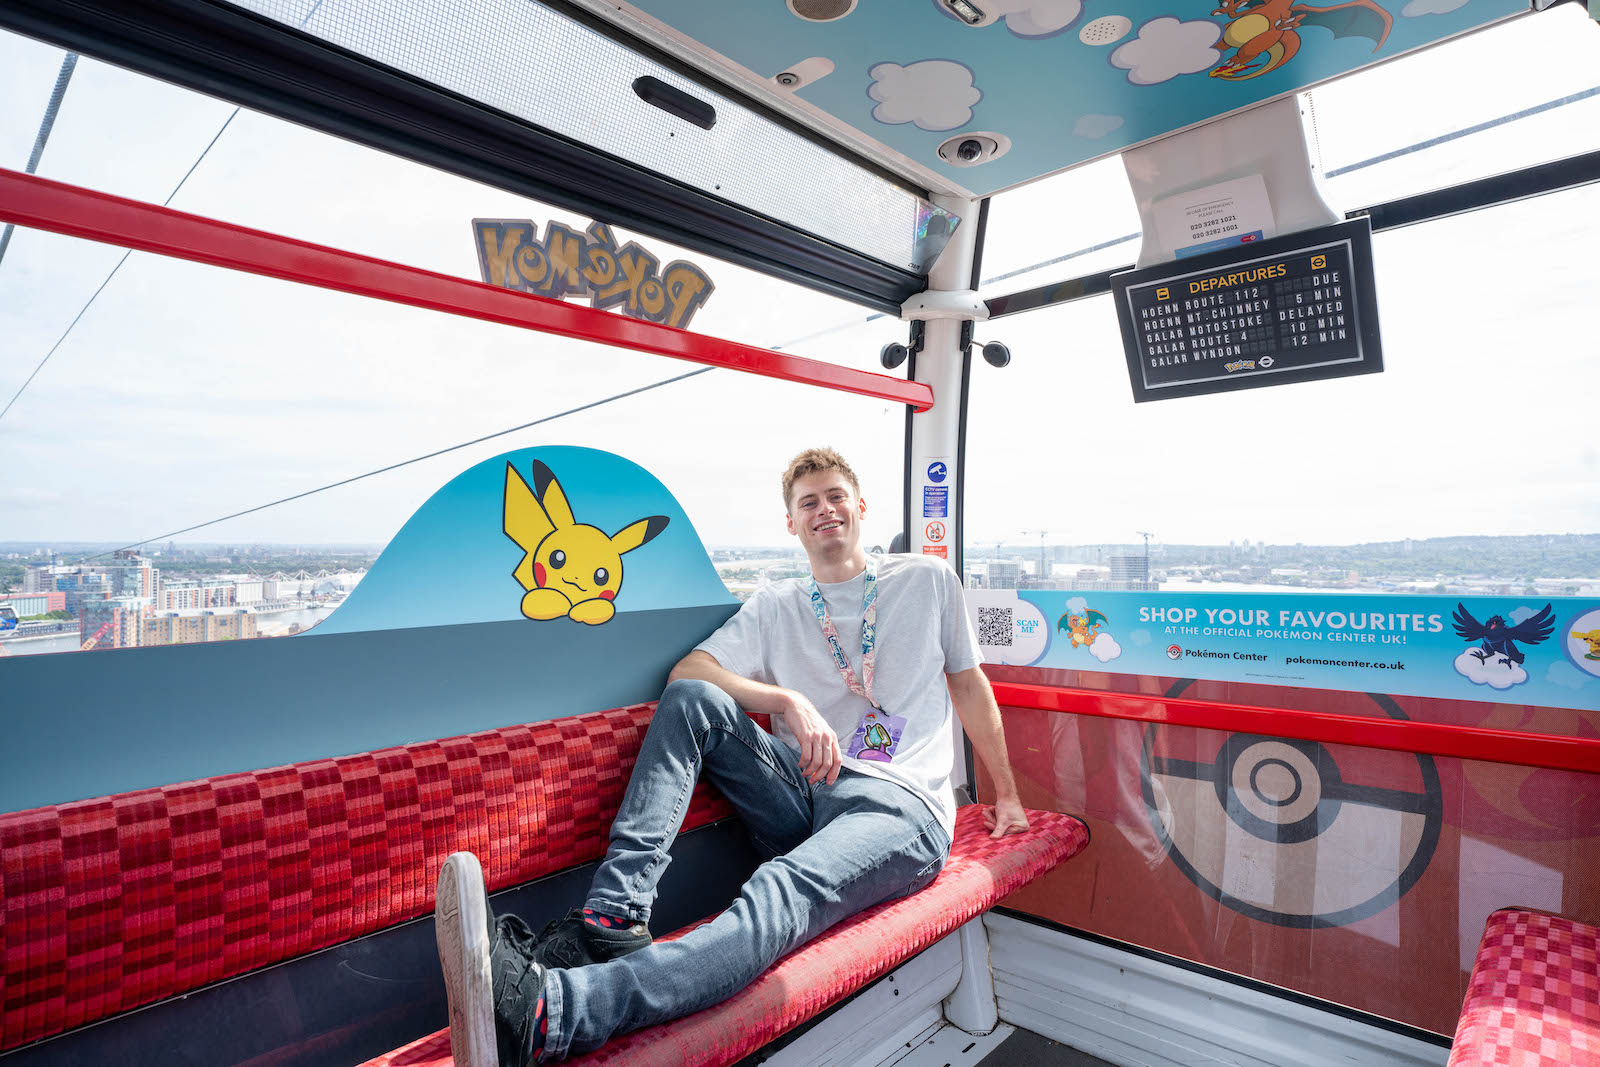 Lelaki berkaus putih naik kereta gantung yang dekorasinya penuh gambar Pokemon dan Pikachu